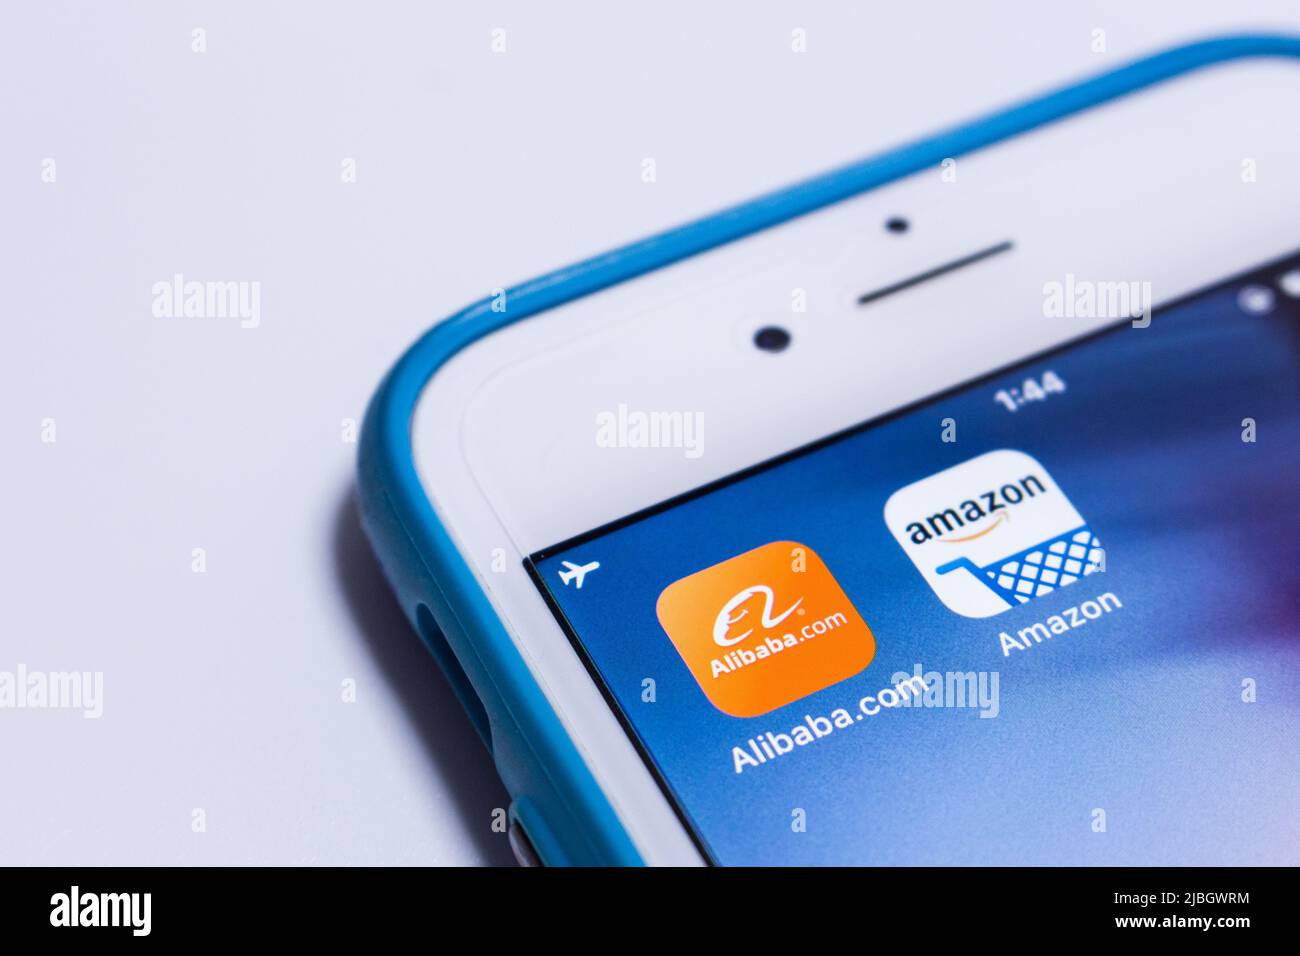 Amazon & Alibaba, 2 große Tech-Giganten, auf einem iPhone. Alibaba ist eine auf E-Commerce und IT-Technologie spezialisierte, multinationale chinesische Holding-Gesellschaft. Stockfoto